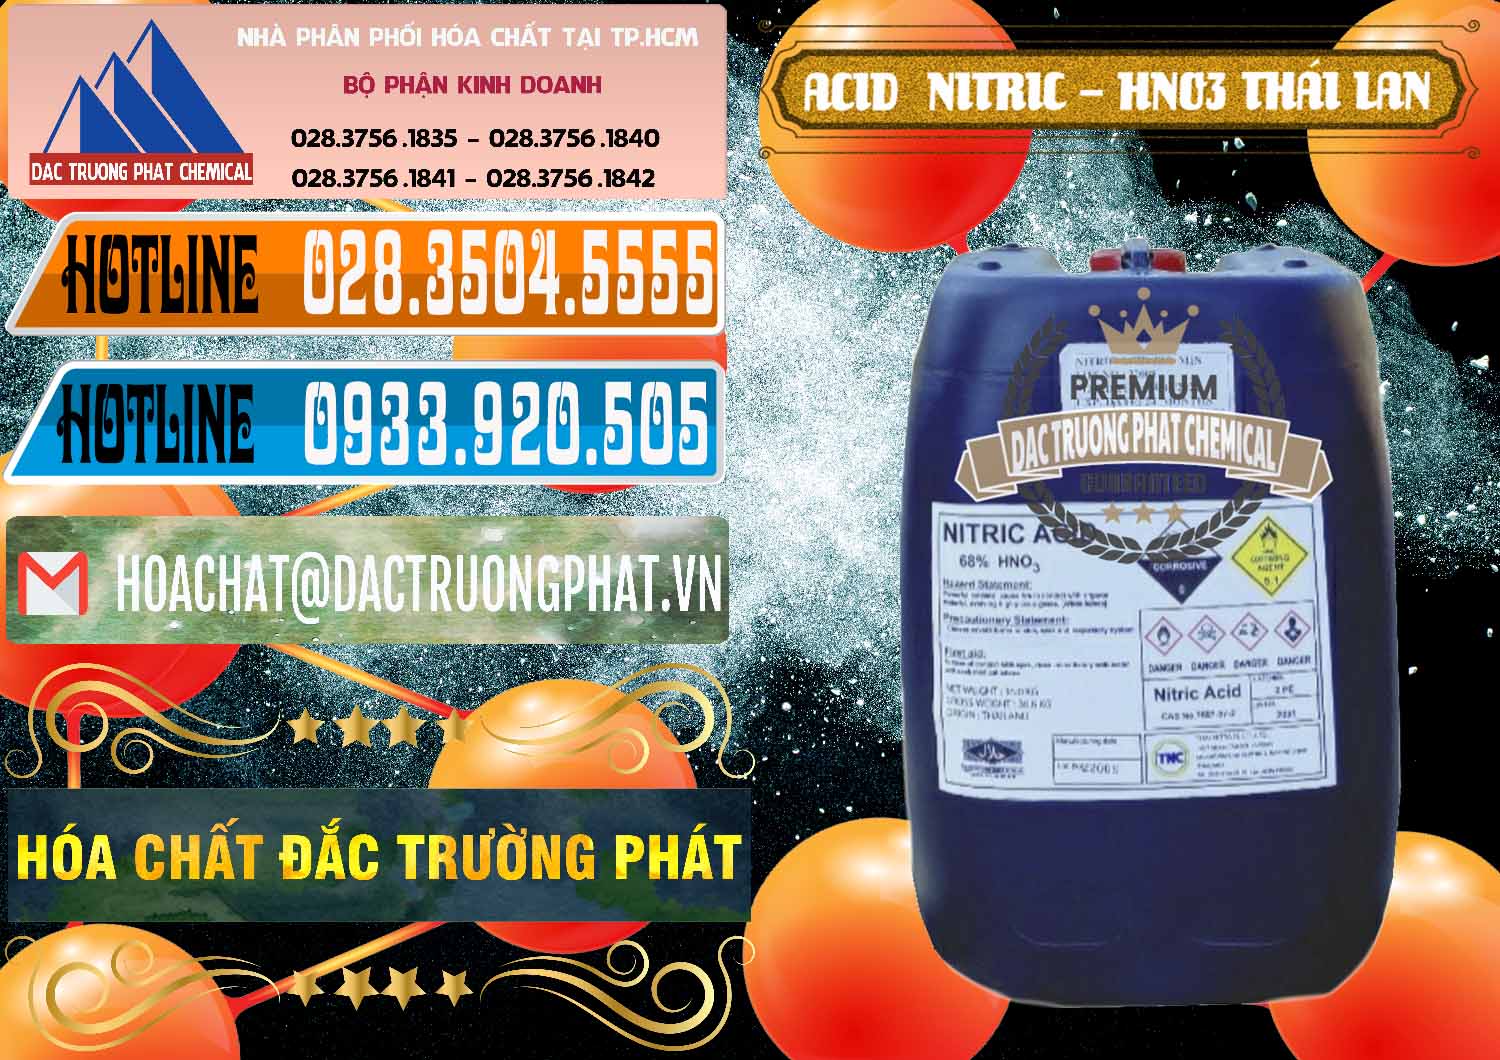 Công ty chuyên cung ứng và bán Acid Nitric – Axit Nitric HNO3 Thái Lan Thailand - 0344 - Cty cung cấp - nhập khẩu hóa chất tại TP.HCM - stmp.net